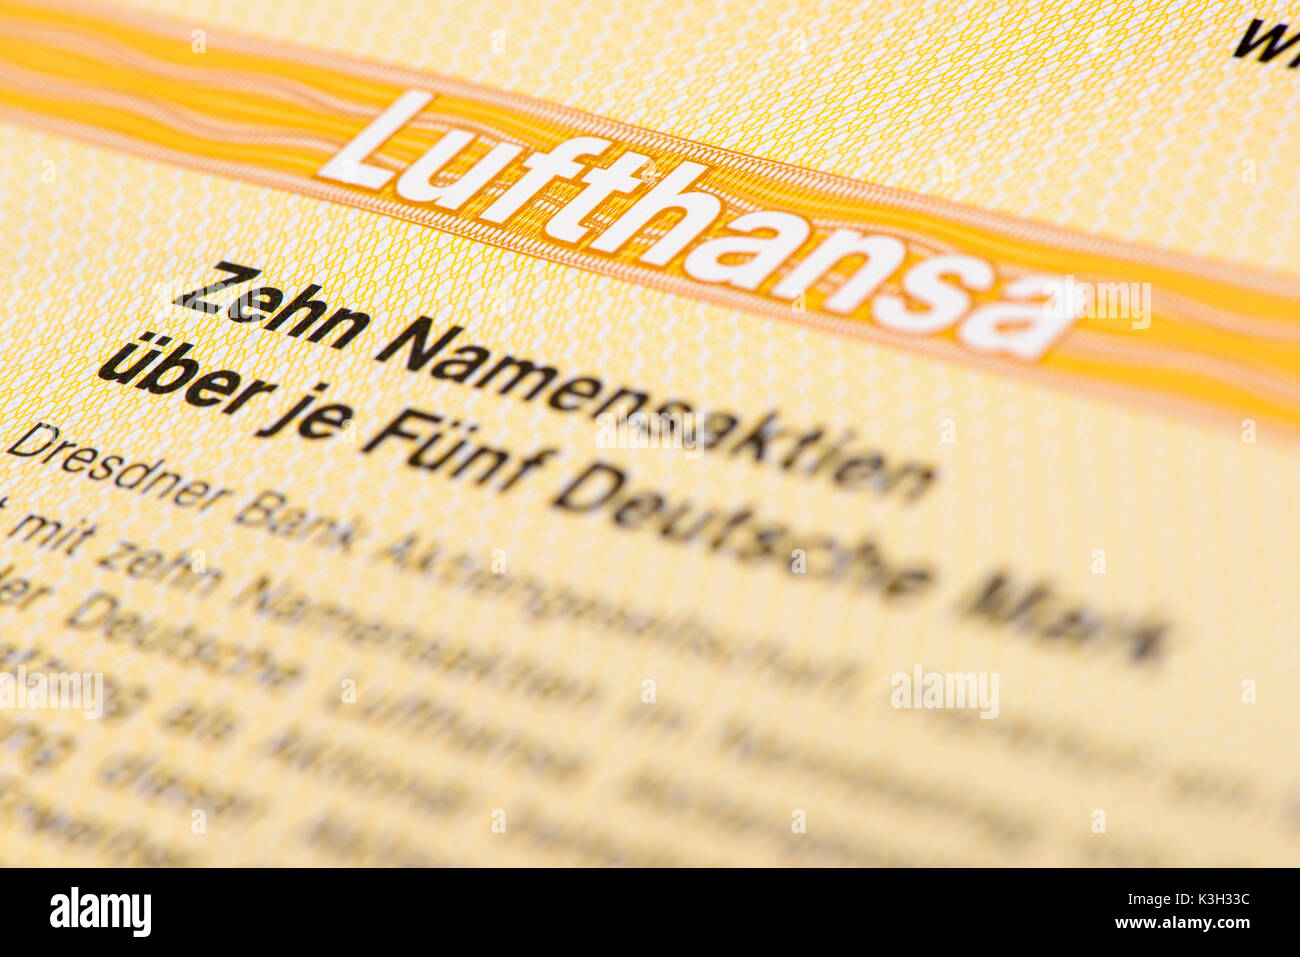 Magazzino della compagnia Lufthansa Foto Stock